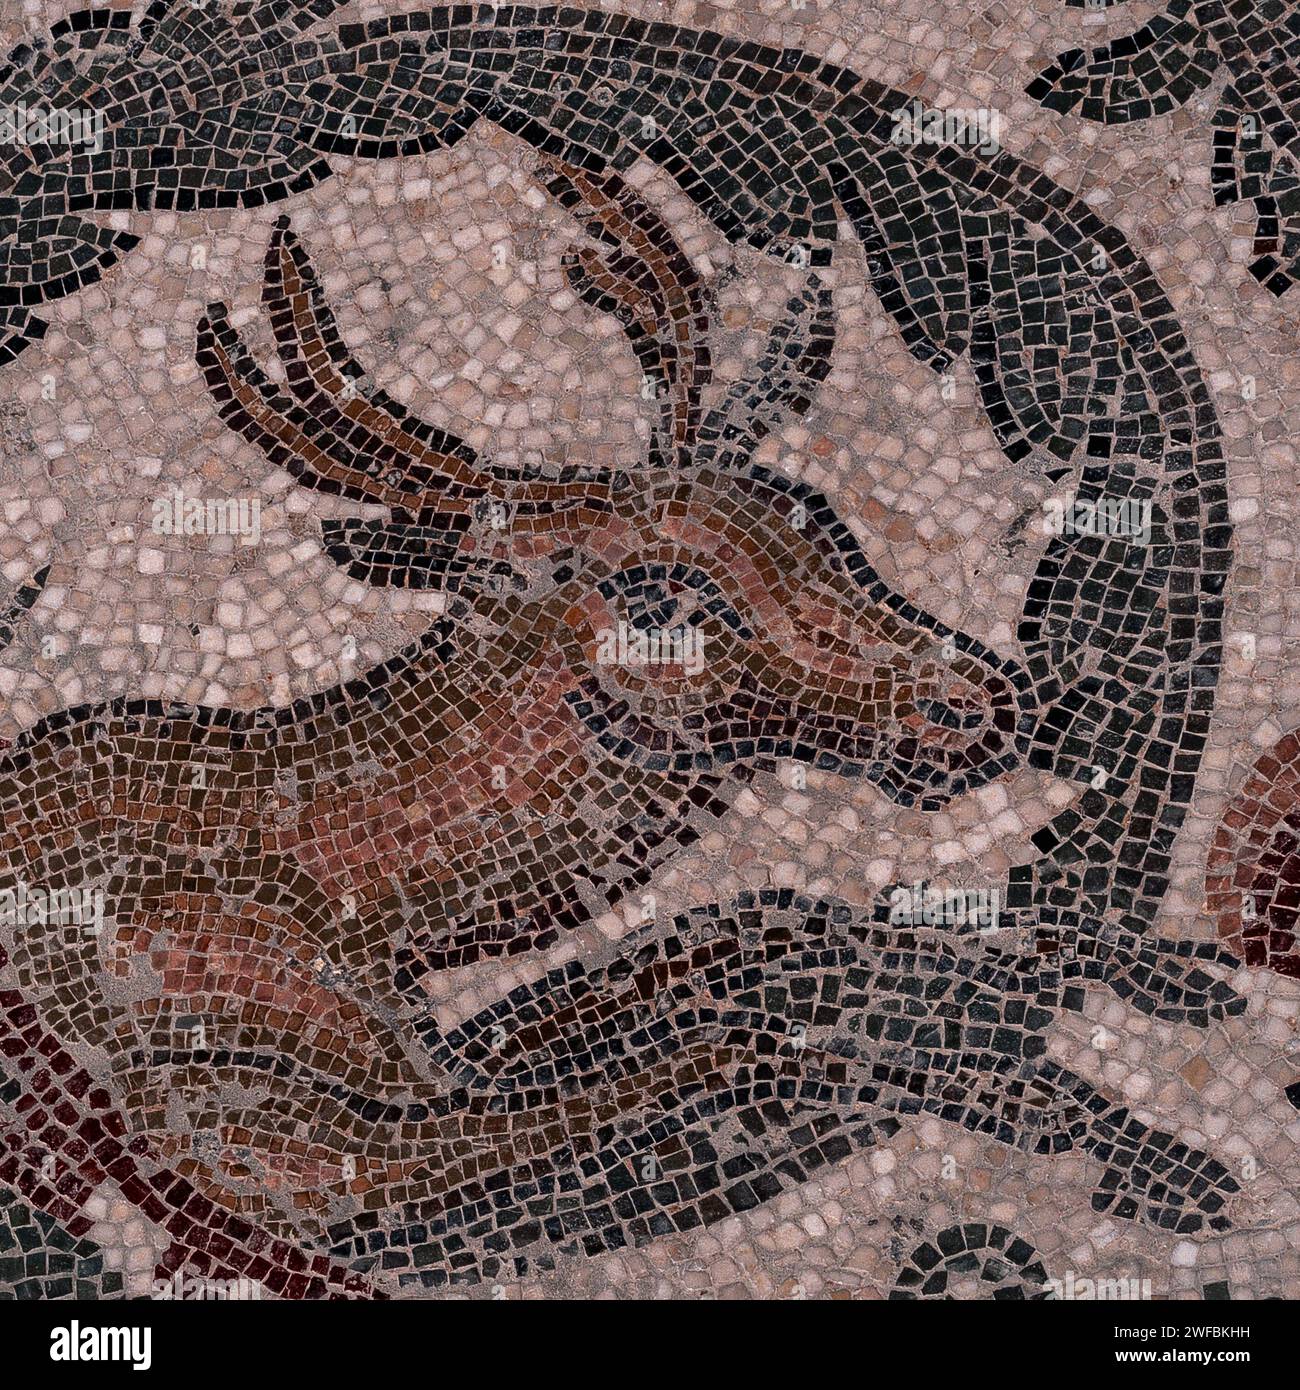 Vierhörnige Antilope, gebürtig in Indien. Detail des spätrömischen Bodenmosaiks im Peristil an das TriClinium (Speisesaal) in der Villa Romana del Casale, Piazza Armerina, Sizilien, Italien. Stockfoto